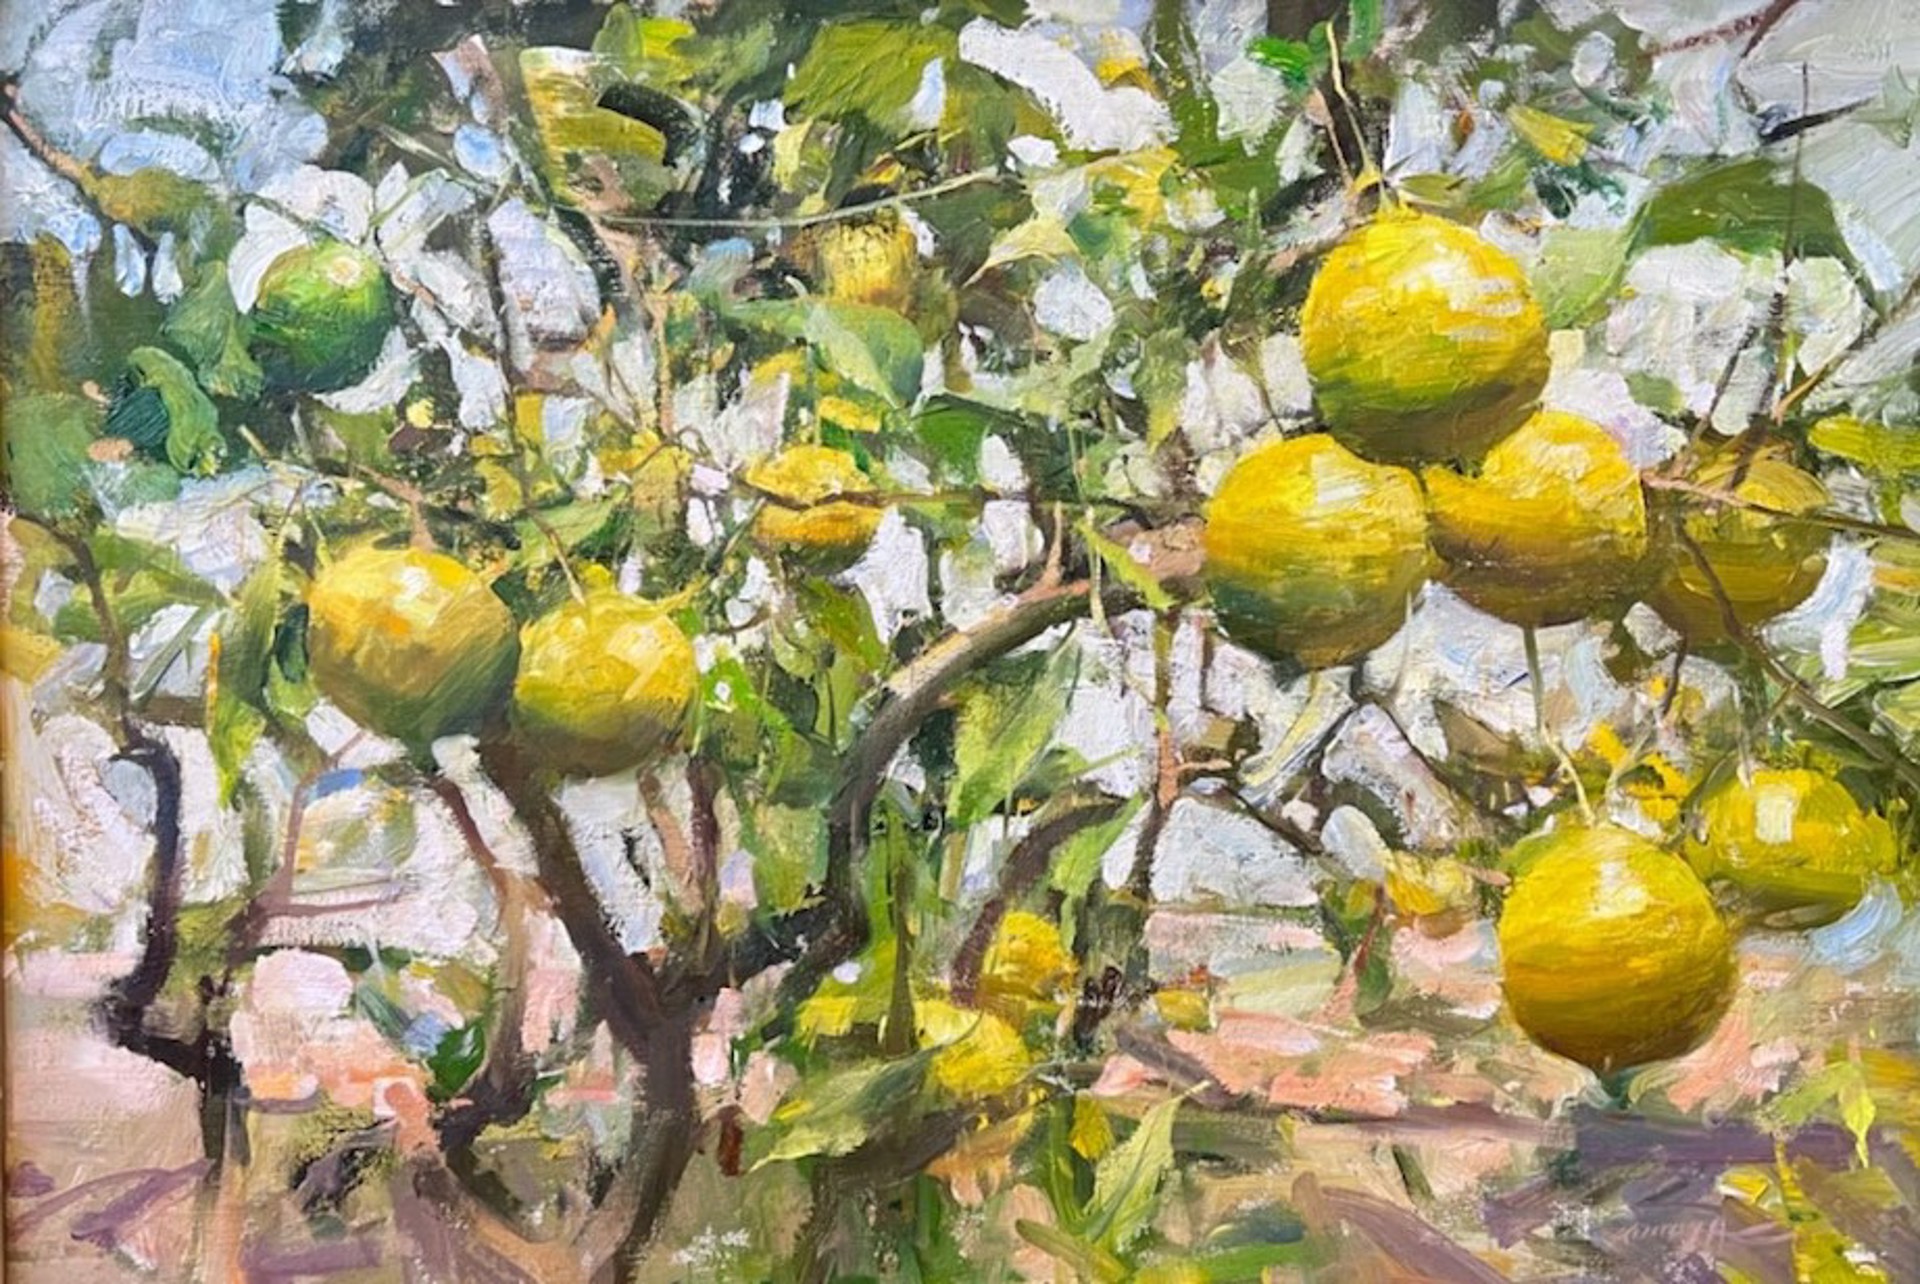 Meier Lemons by Quang Ho